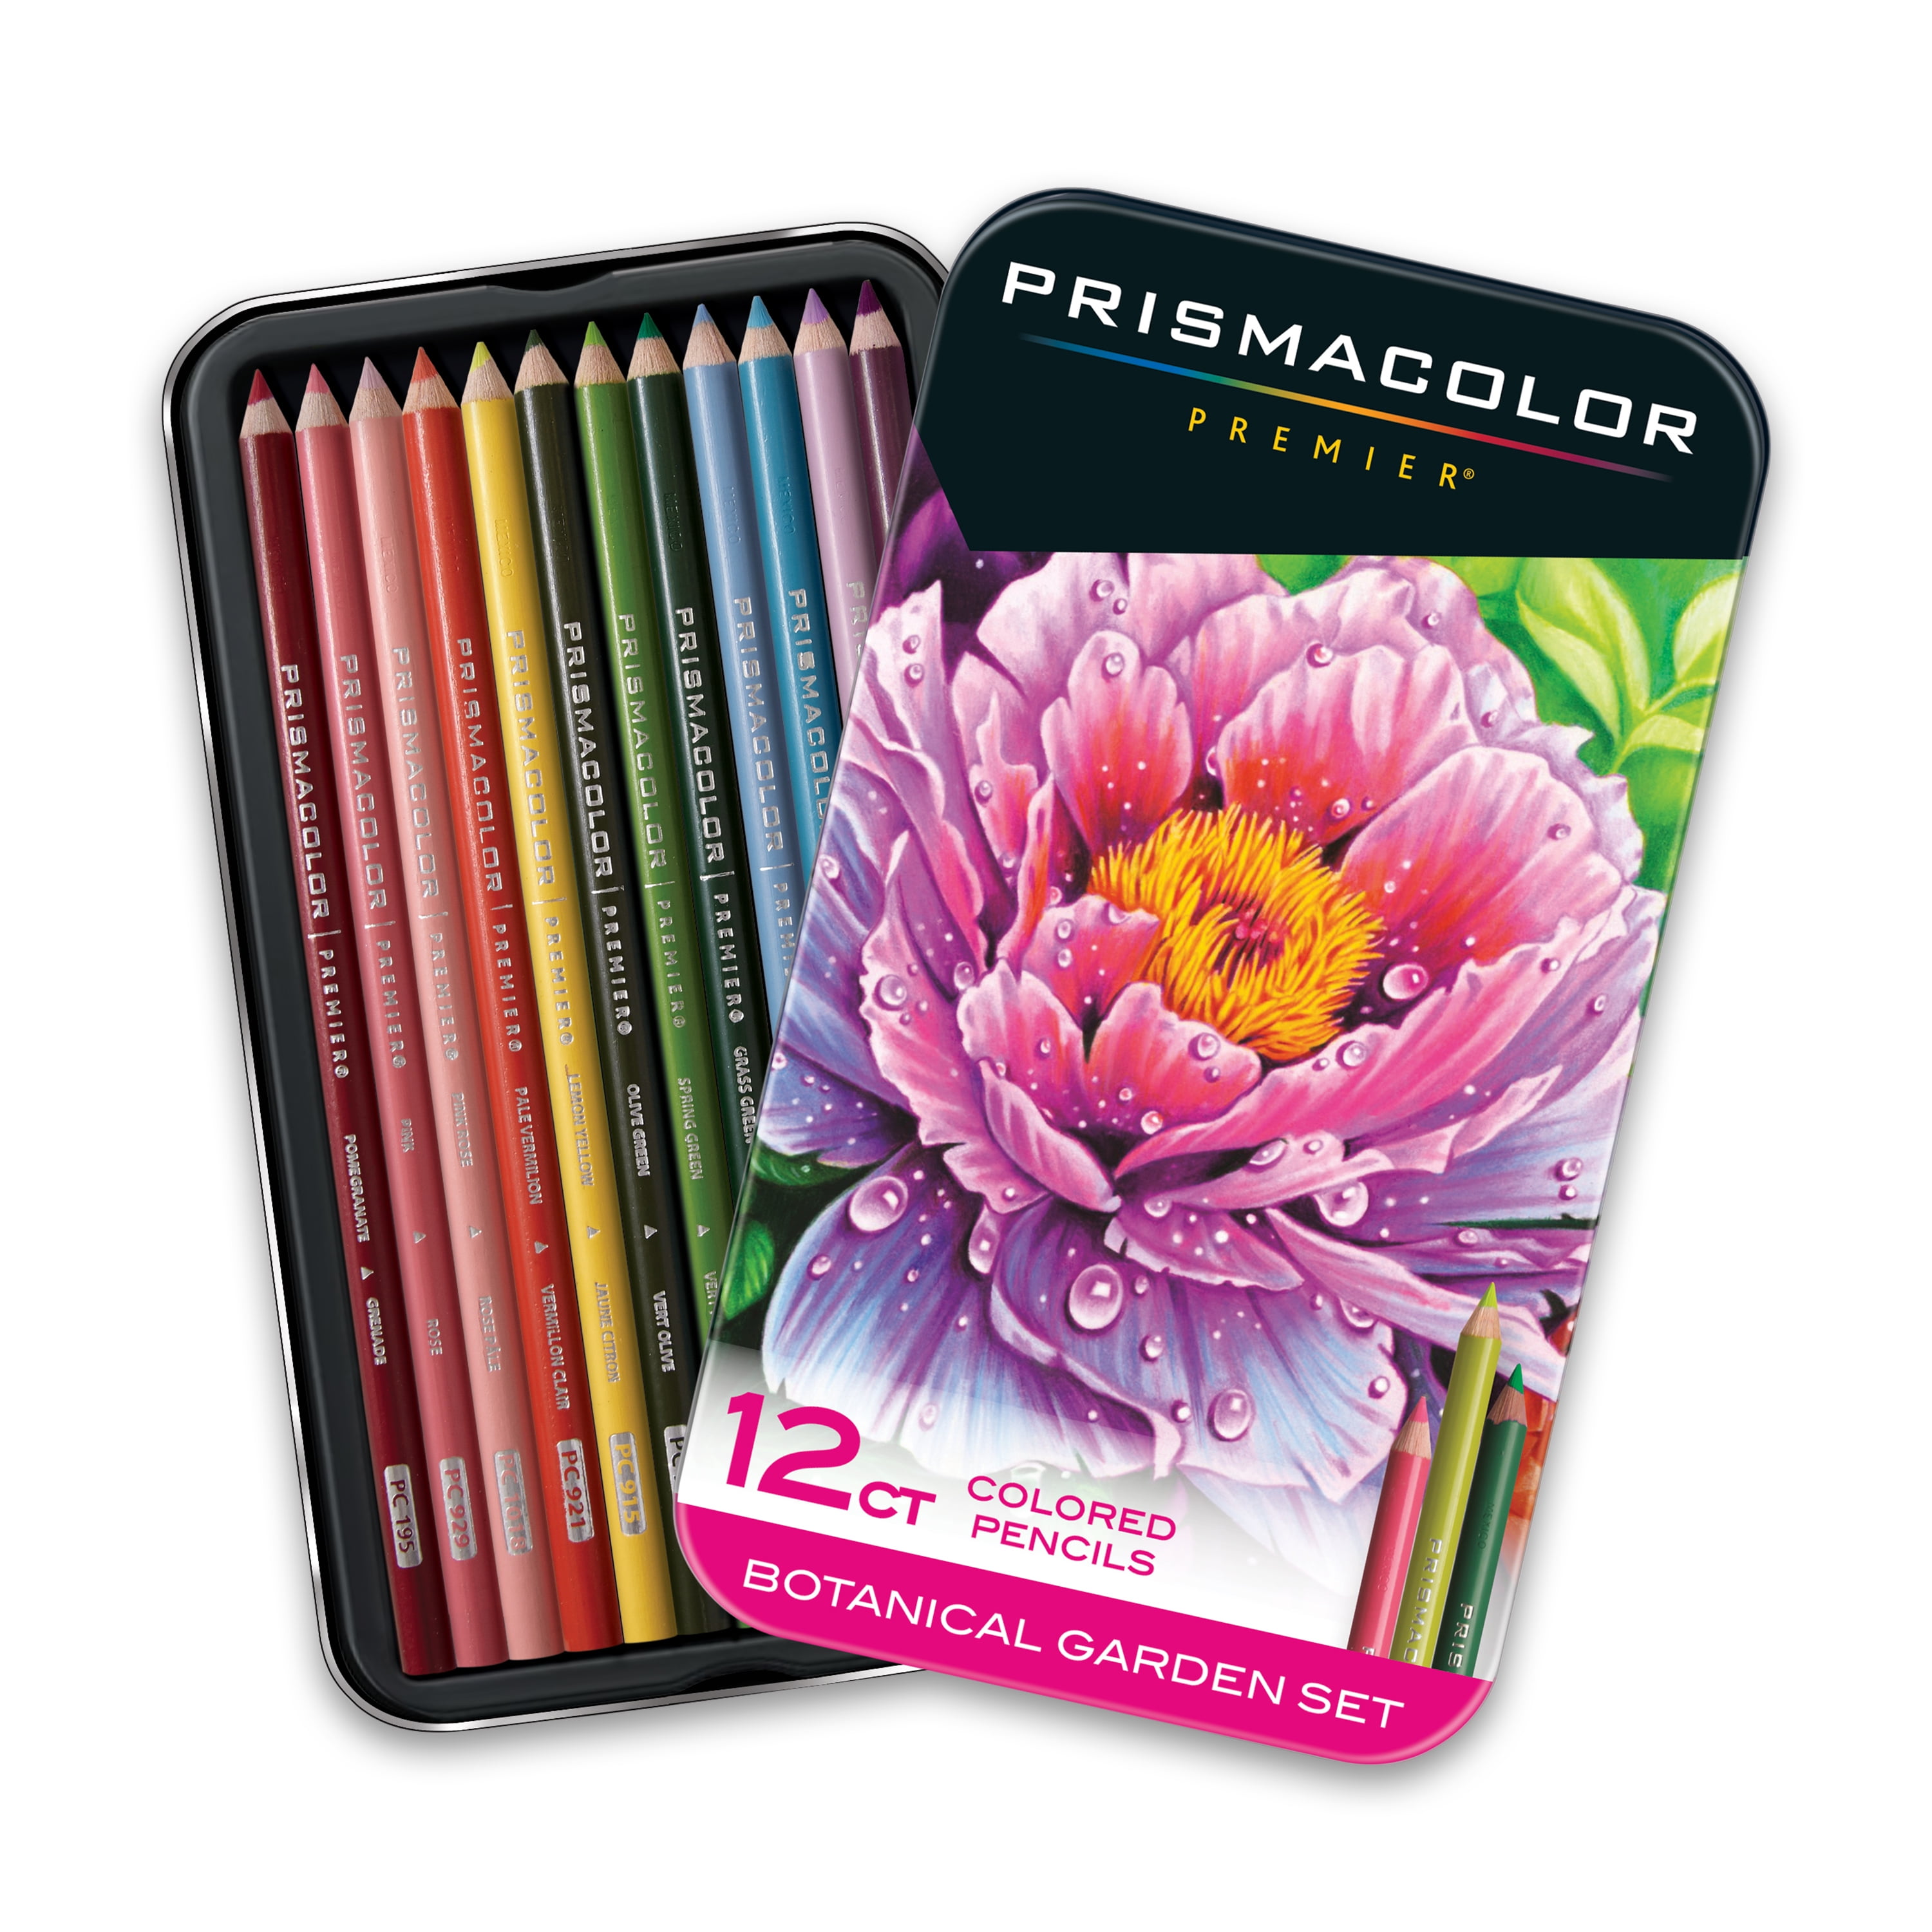 Prismacolor Premier Colored Pencils, Soft Core, Botanical Garden Set, 12 Count picture